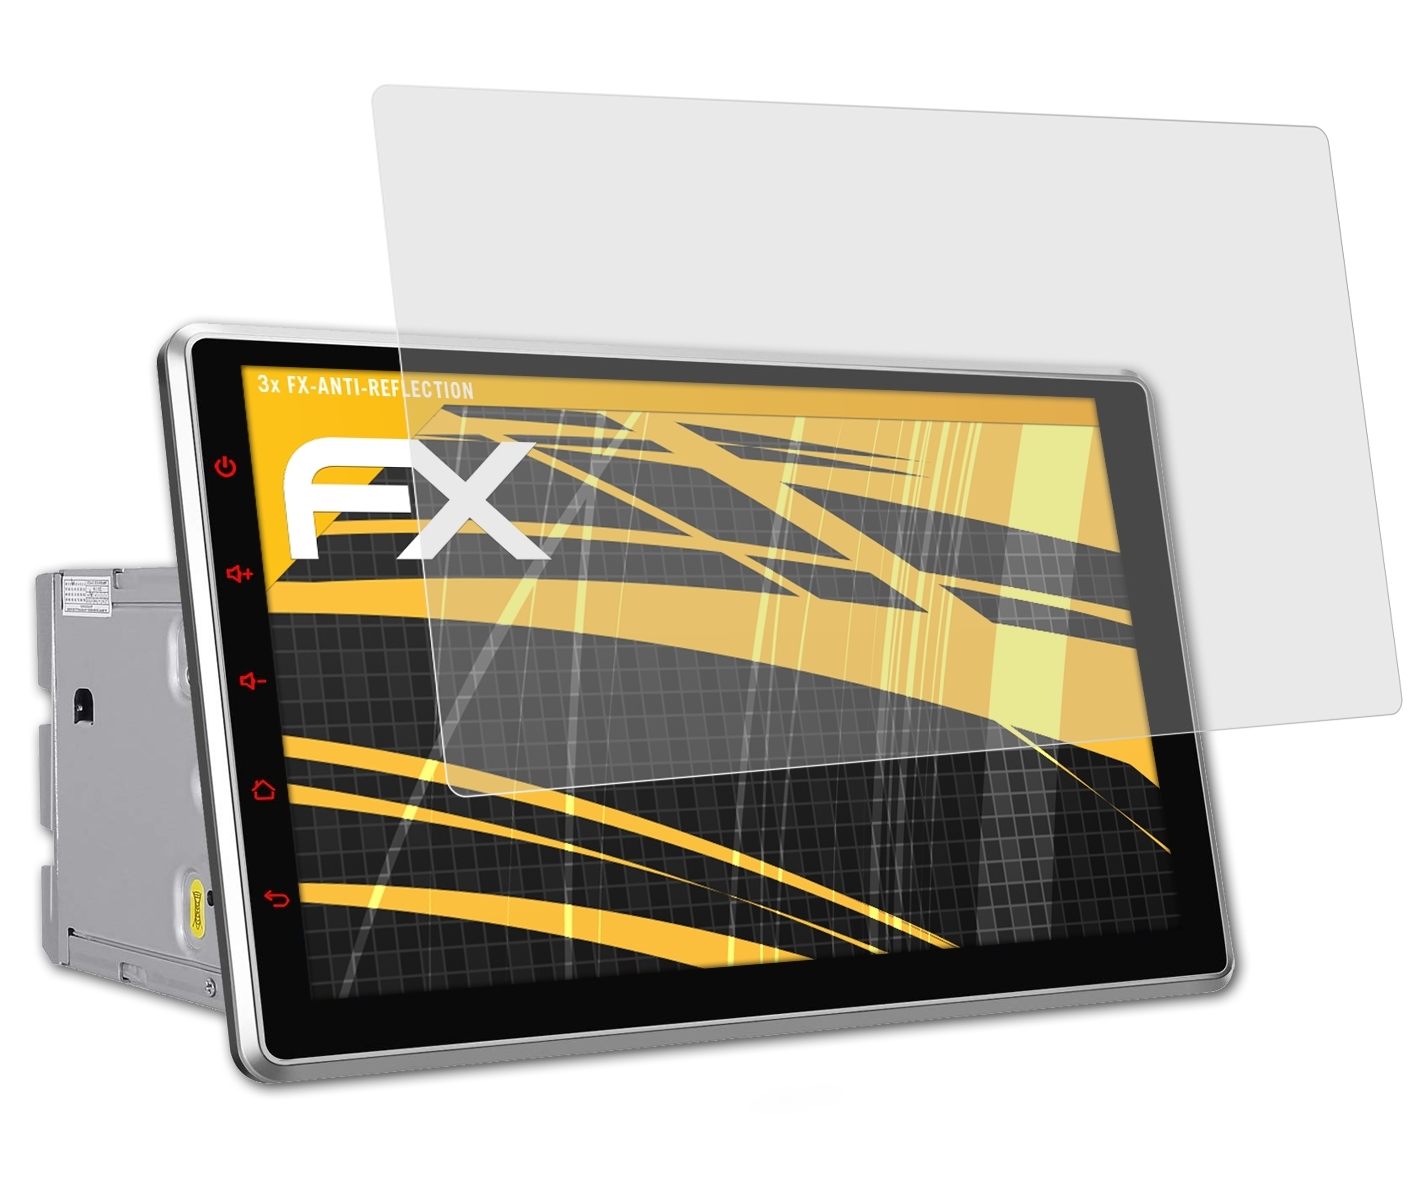 ATFOLIX 3x FX-Antireflex Inch Displayschutz(für (Universal)) 10.1 Pumpkin AA0412B